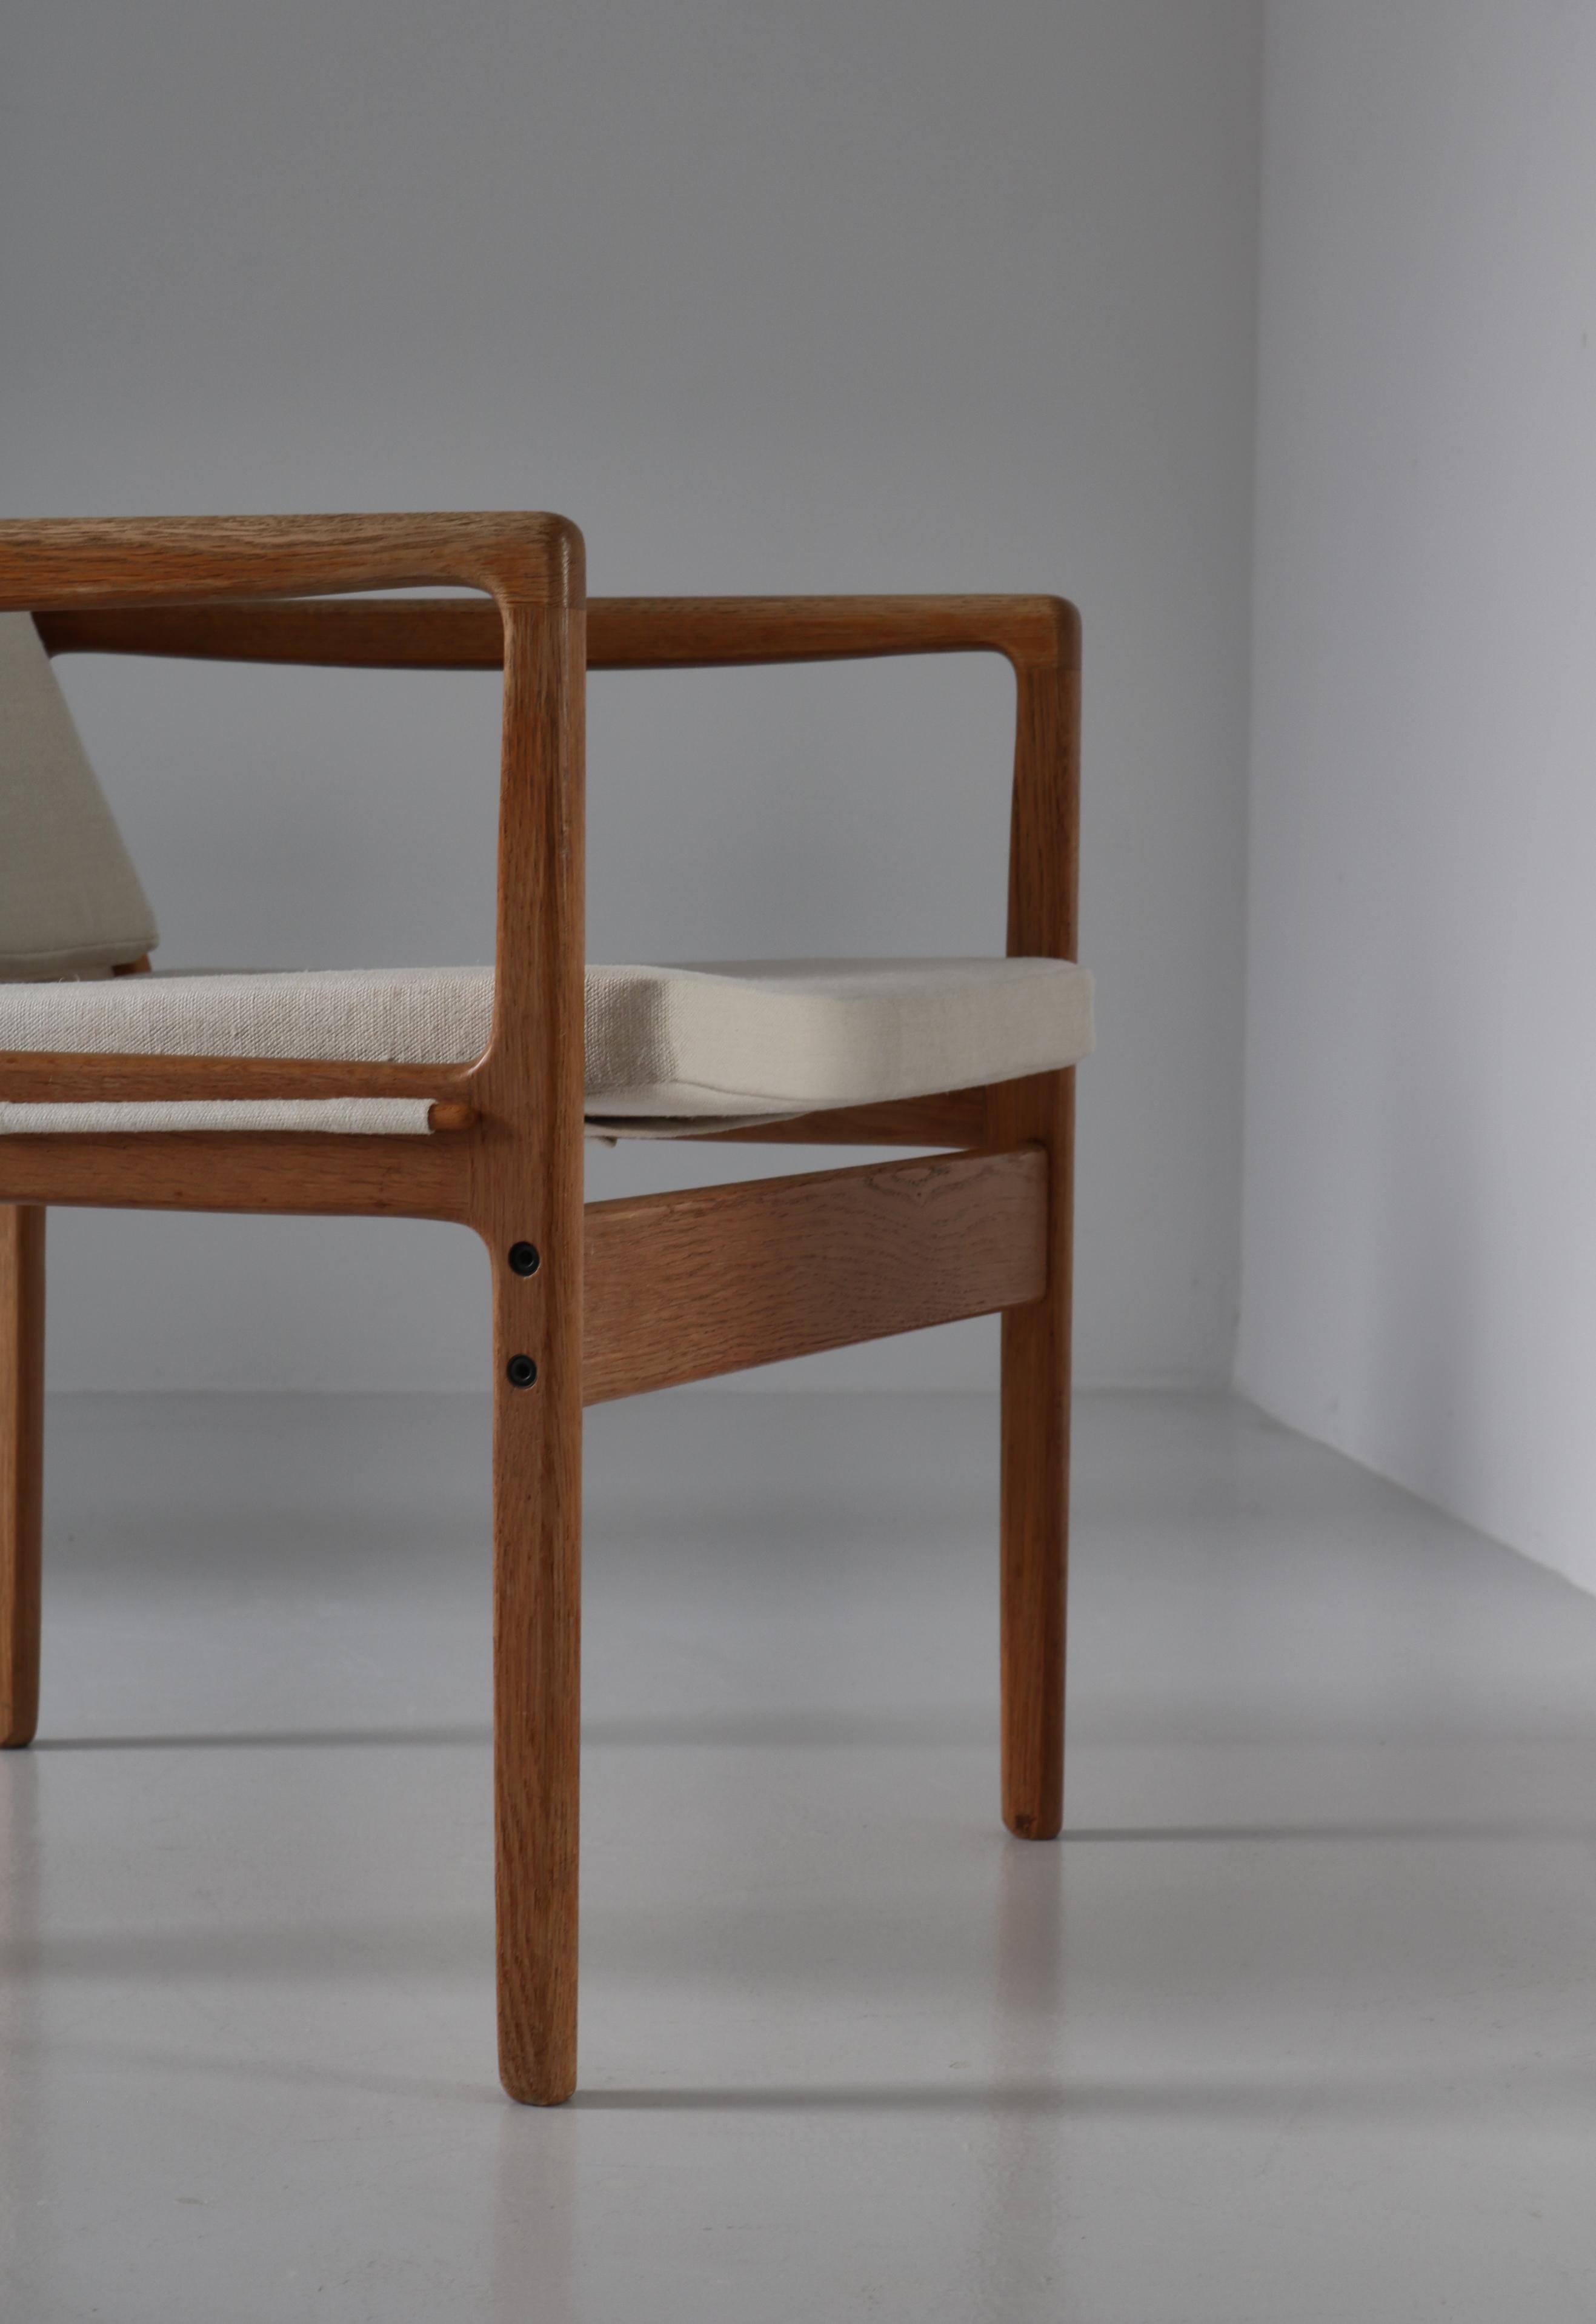 Ole Wanscher Safari Chairs in Oak & Light Canvas, Scandinavian Modern, 1960s For Sale 11